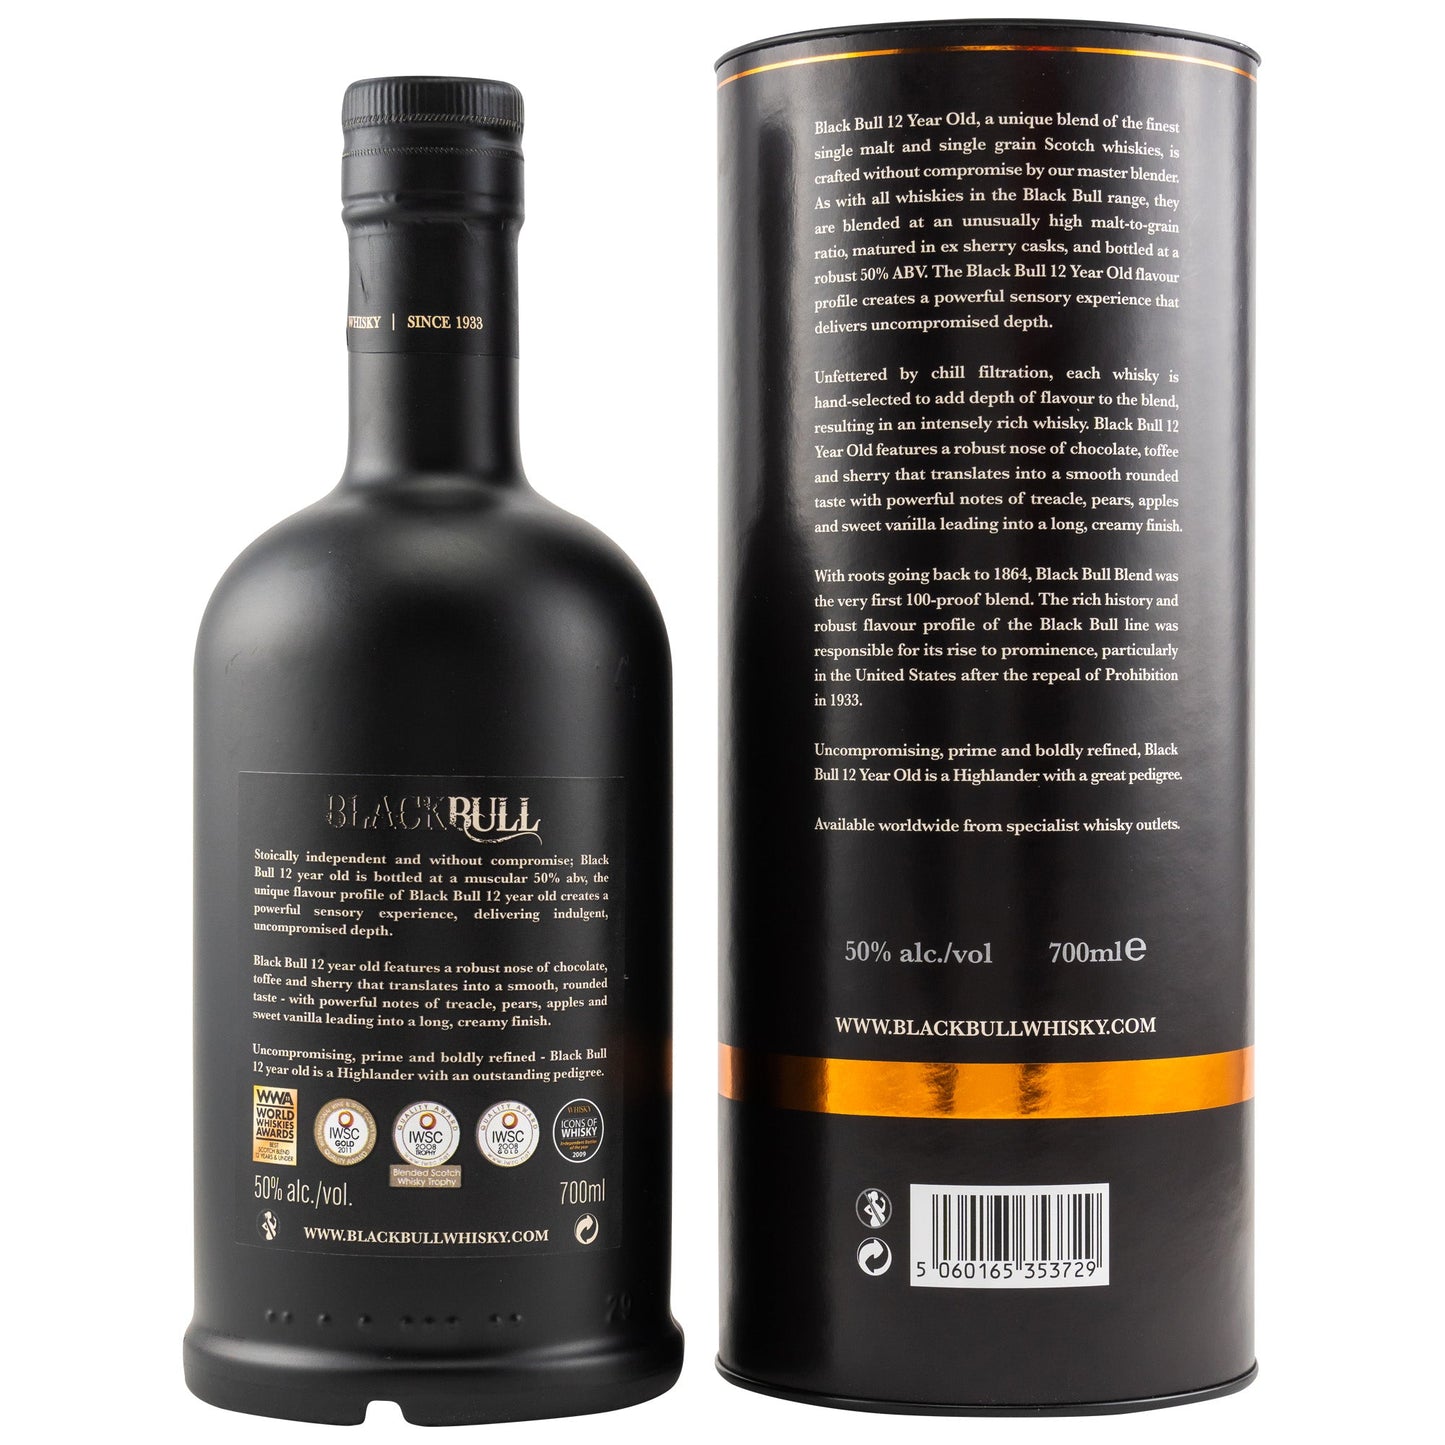 Black Bull | 12 Jahre | Duncan Taylor | Blended Scotch Whisky | 0,7l | 50%GET A BOTTLE